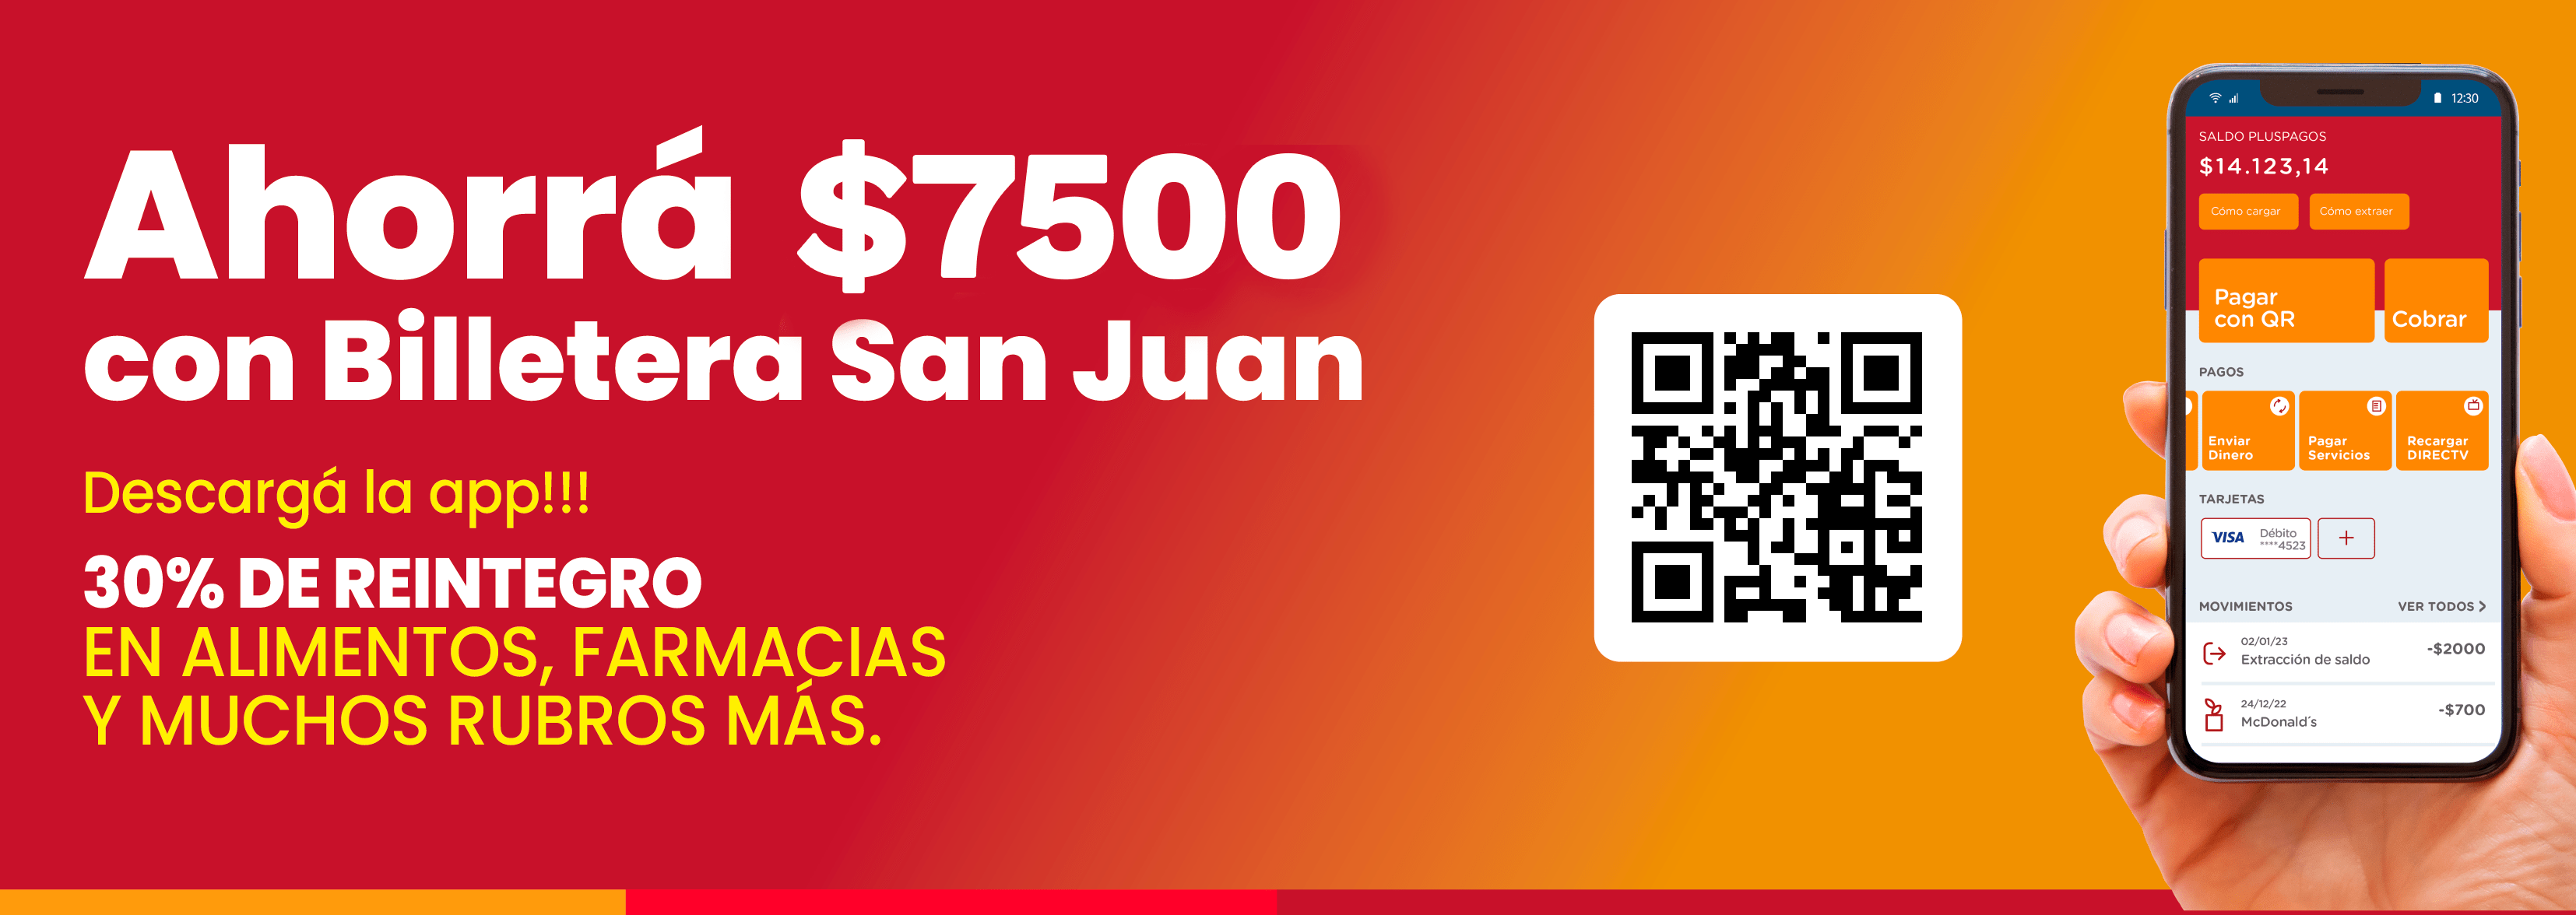 Ahorr� $4000 con Billetera San Juan. Descarg� la app. 30% de reintegro en alimentos, farmacias y muchos rubros m�s